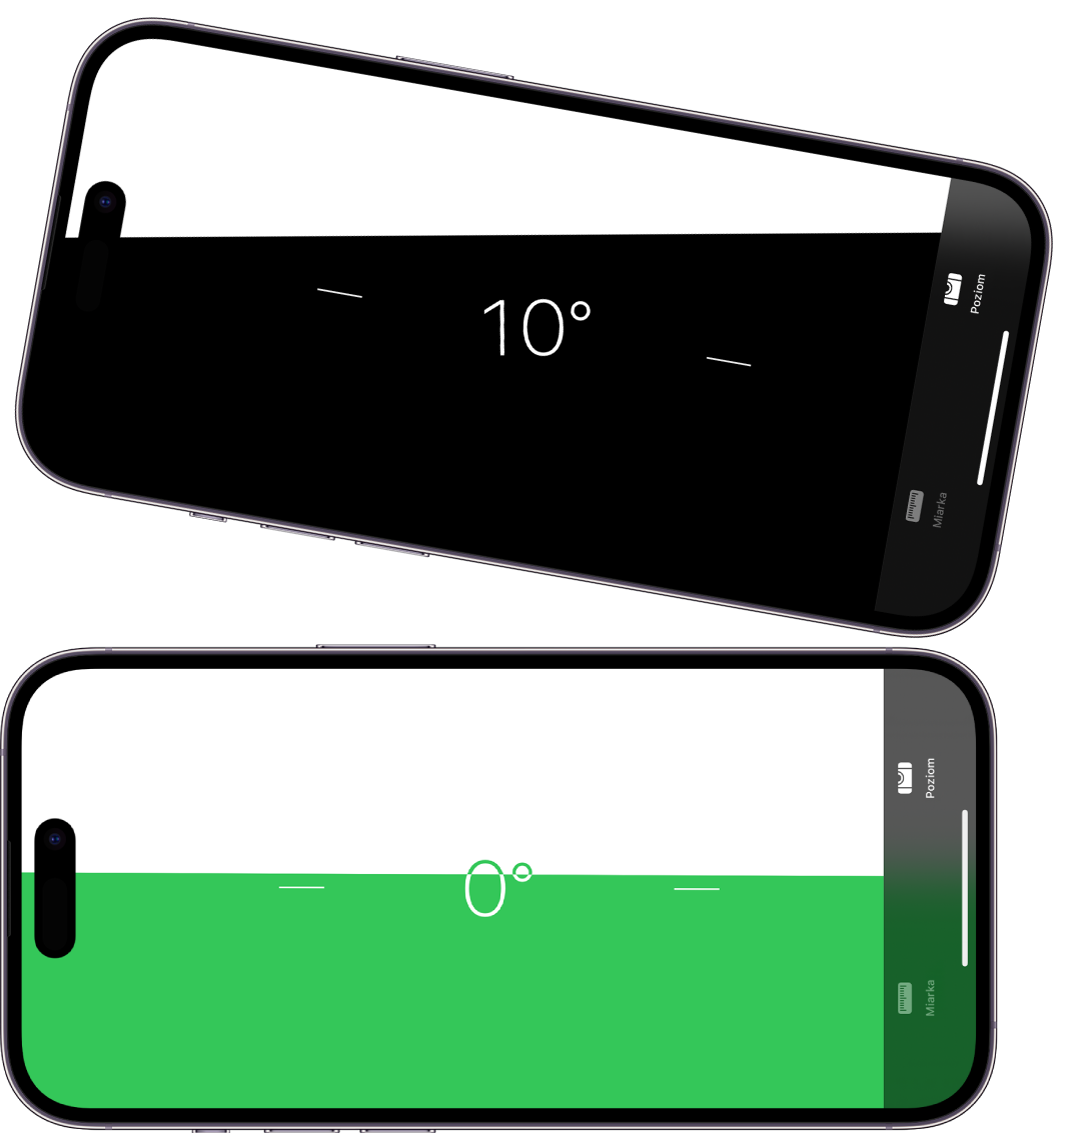 Ekran poziomicy w aplikacji Miarka. U góry widoczny jest iPhone nachylony pod kątem dziesięciu stopni, na dole — wypoziomowany.